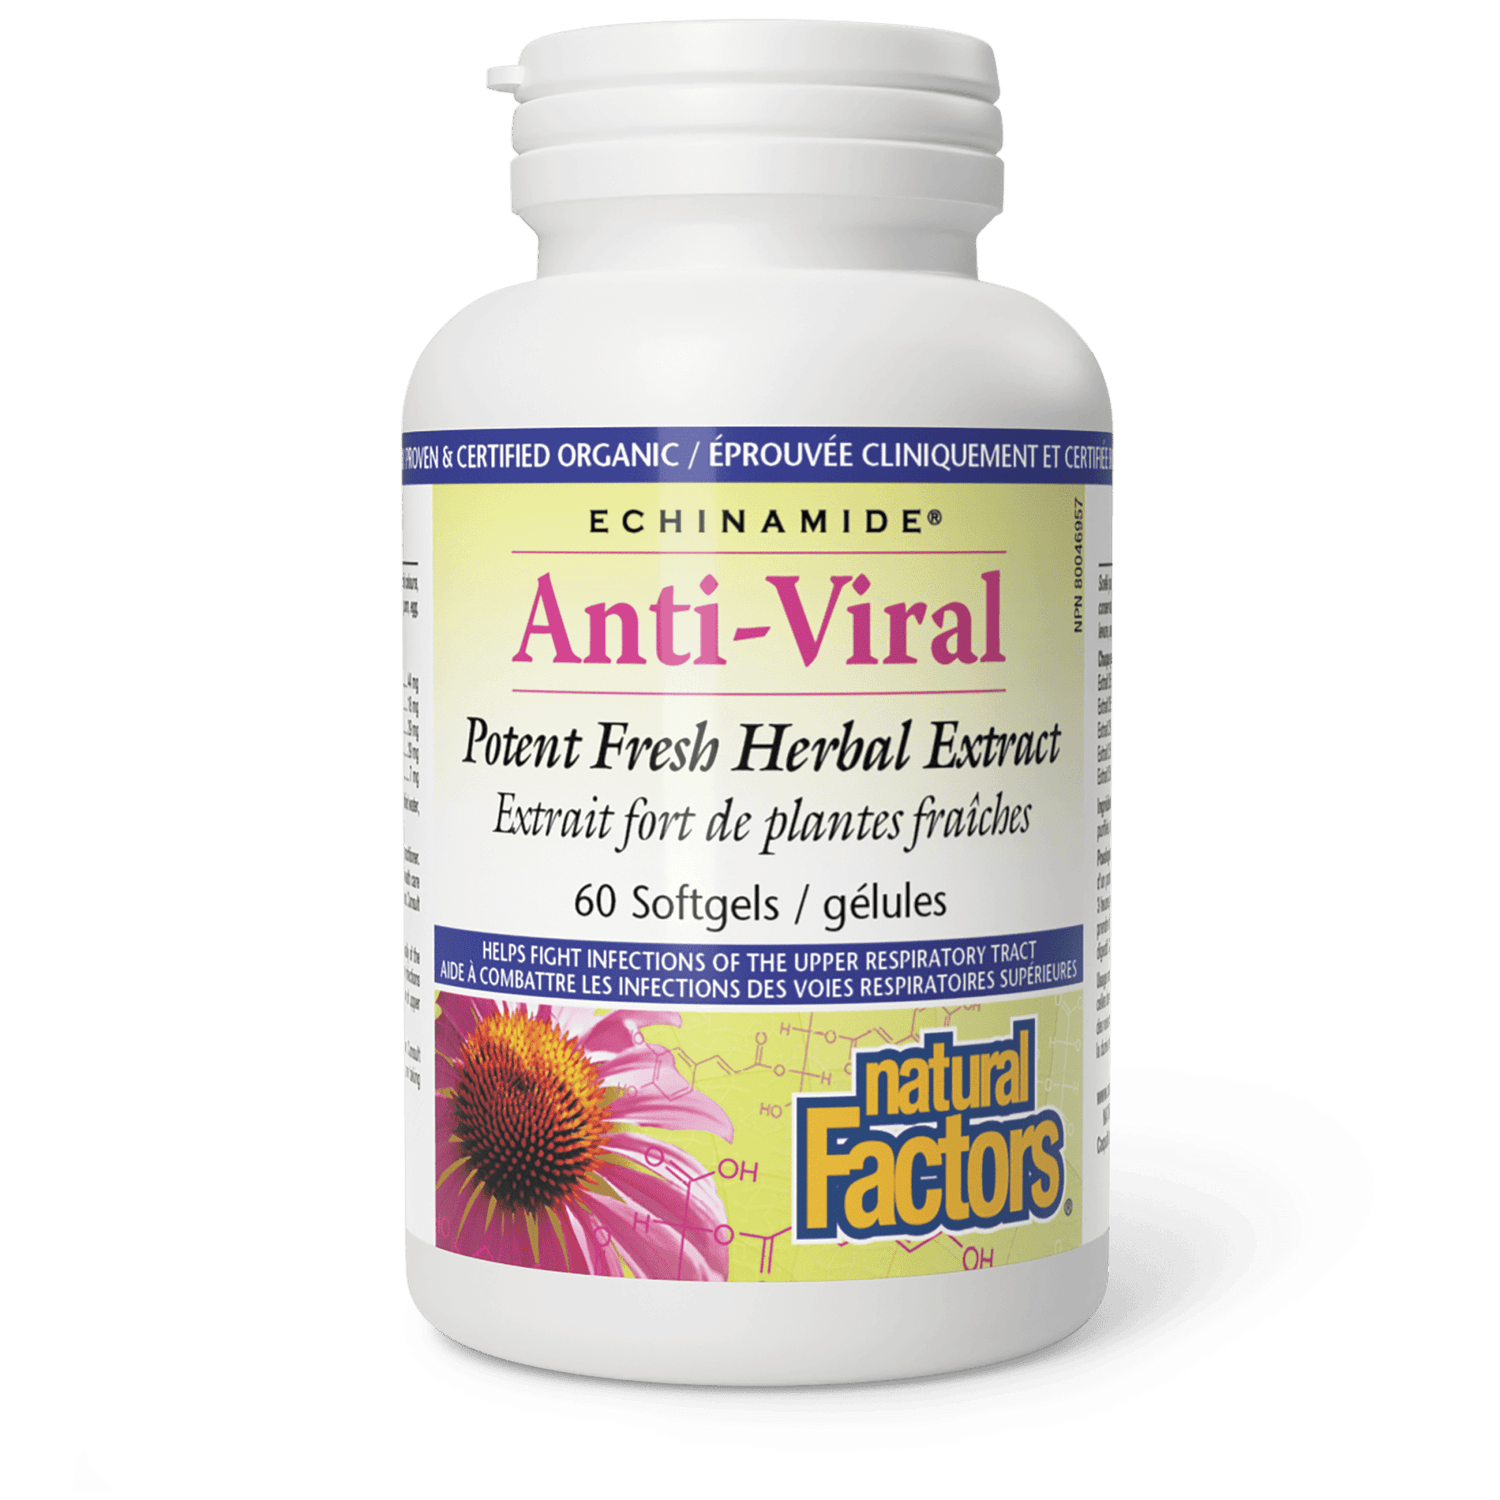 Anti-Viral Extrait fort de plantes fraîches, ECHINAMIDE, Natural Factors|v|image|4700